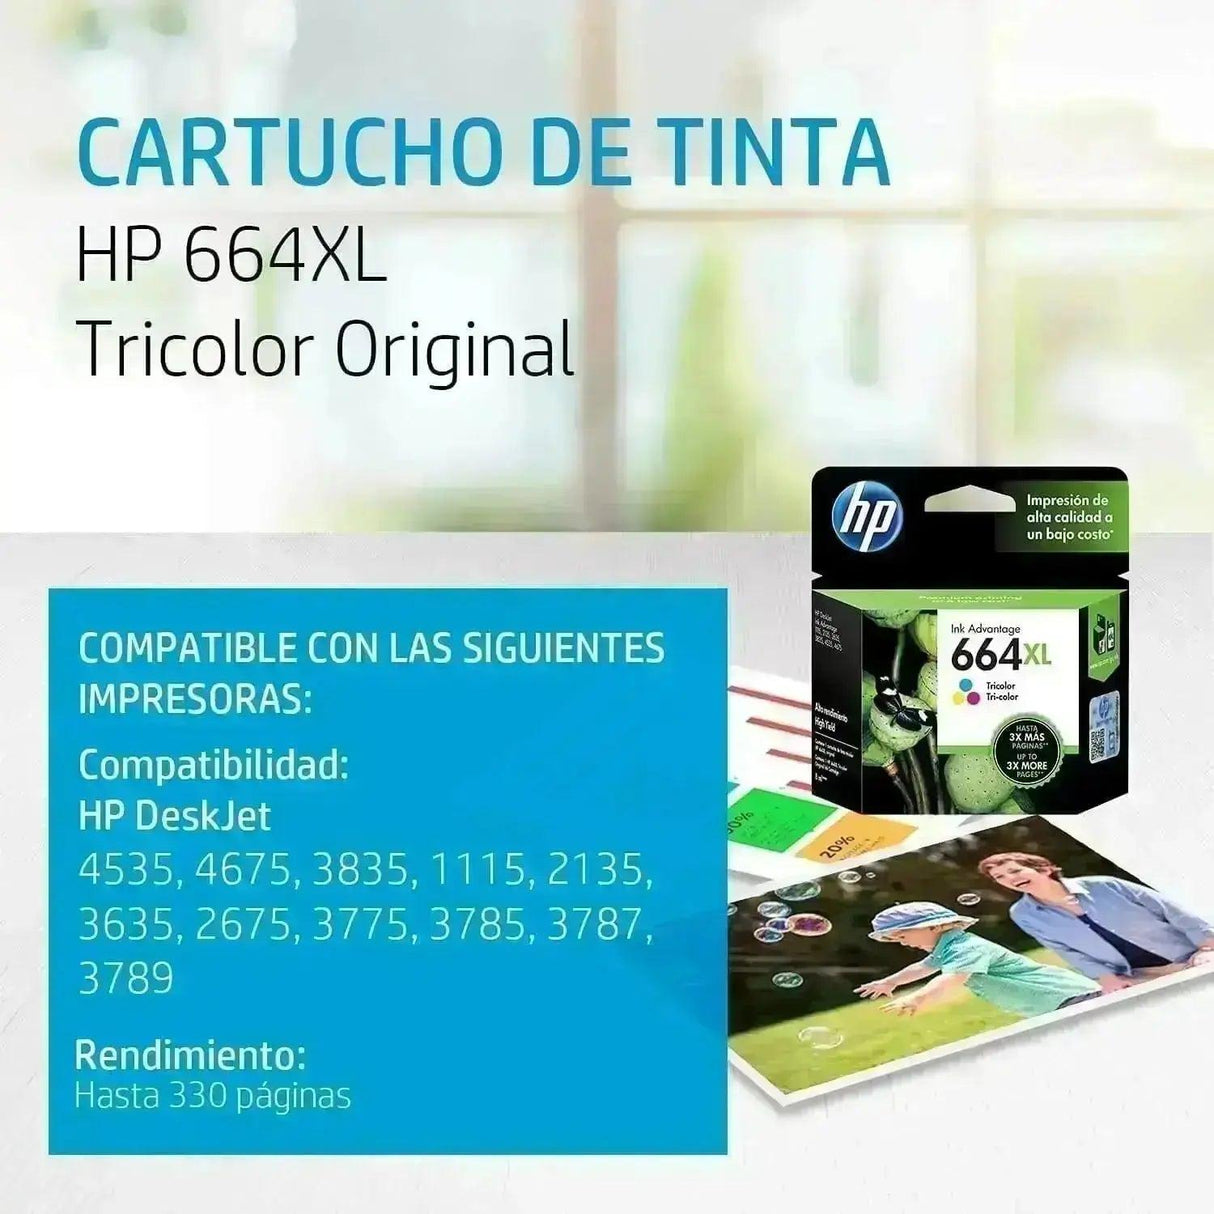 Tinta HP 664XL / 664 XL Color - F6V30AL -  F6V30AL